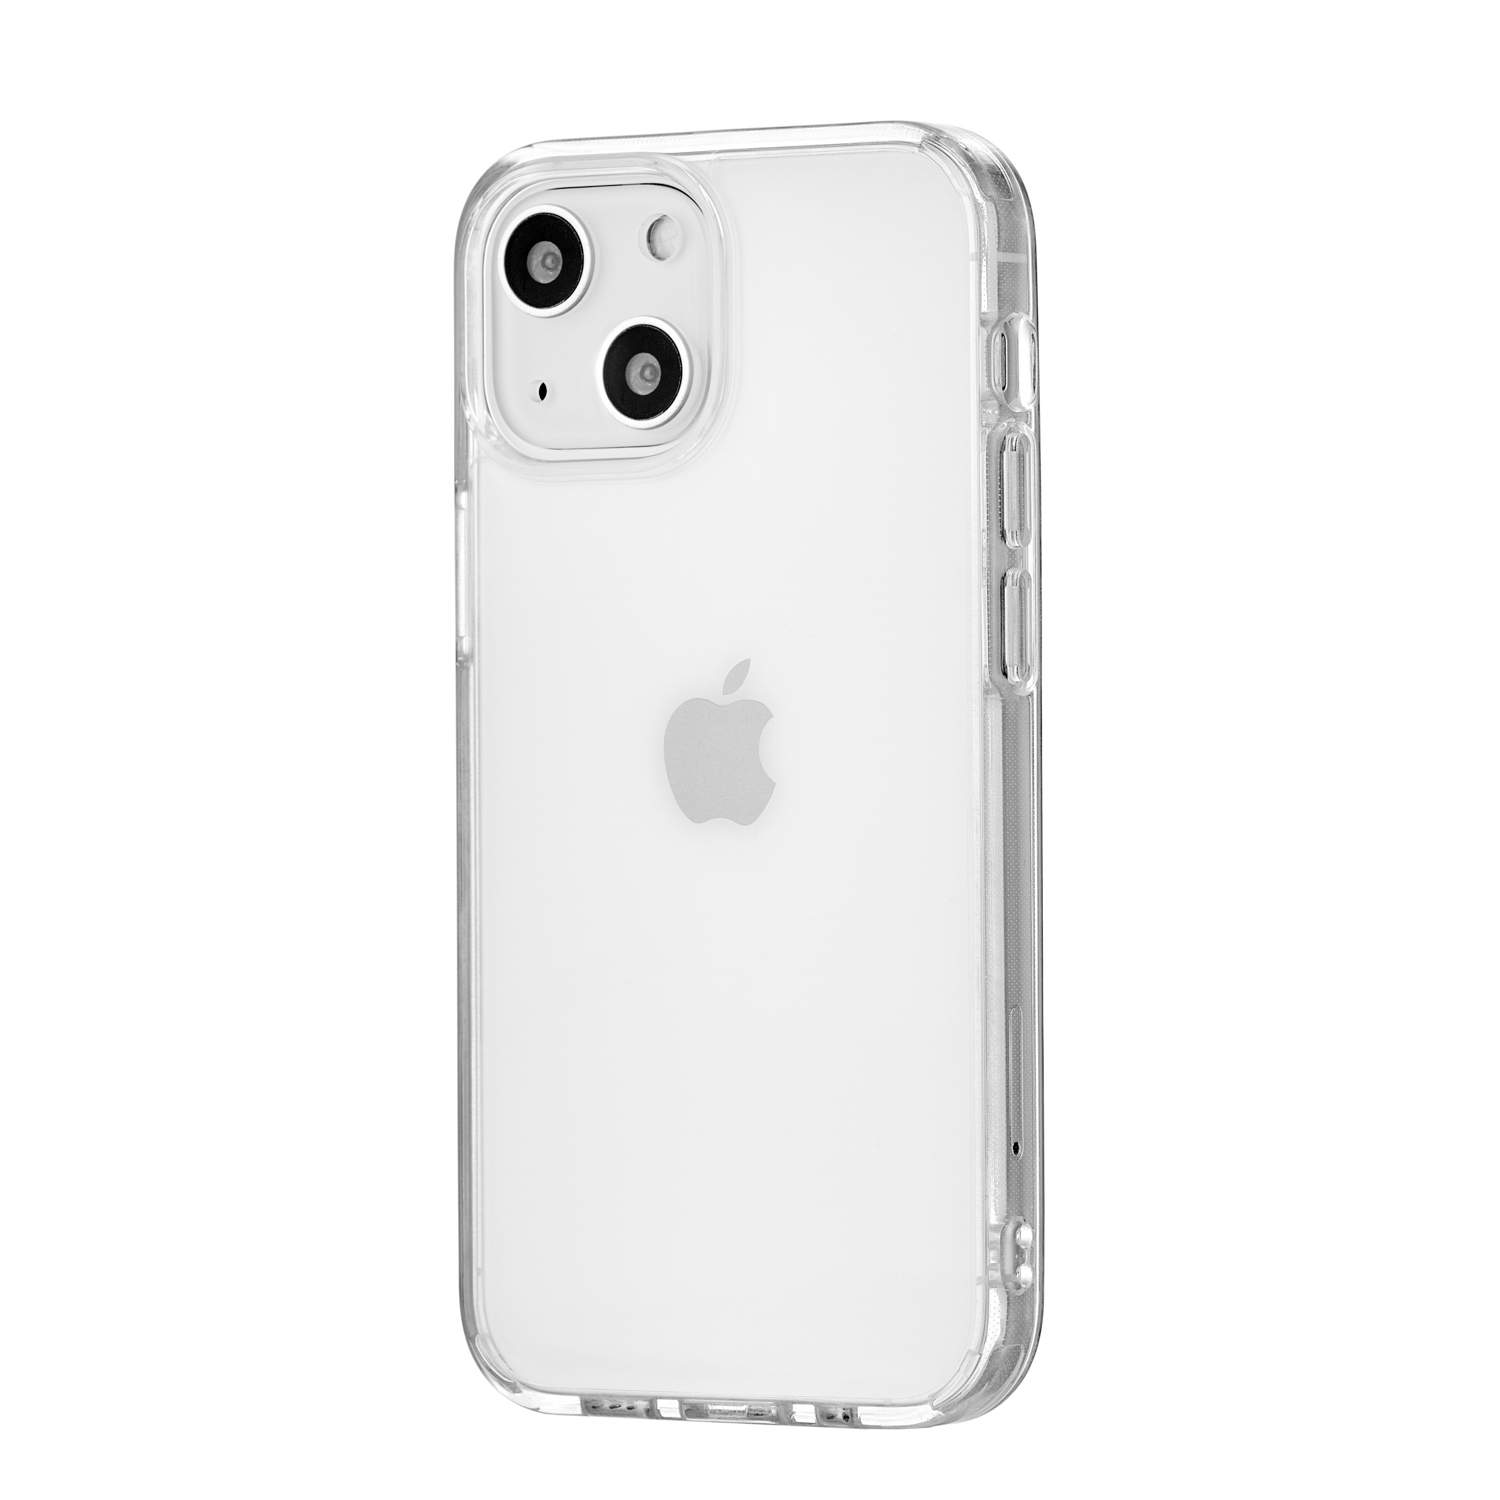 Чехол uBear Real Case для iPhone 13 mini, PC+TPU, прозрачный, купить в  Москве, цены в интернет-магазинах на Мегамаркет